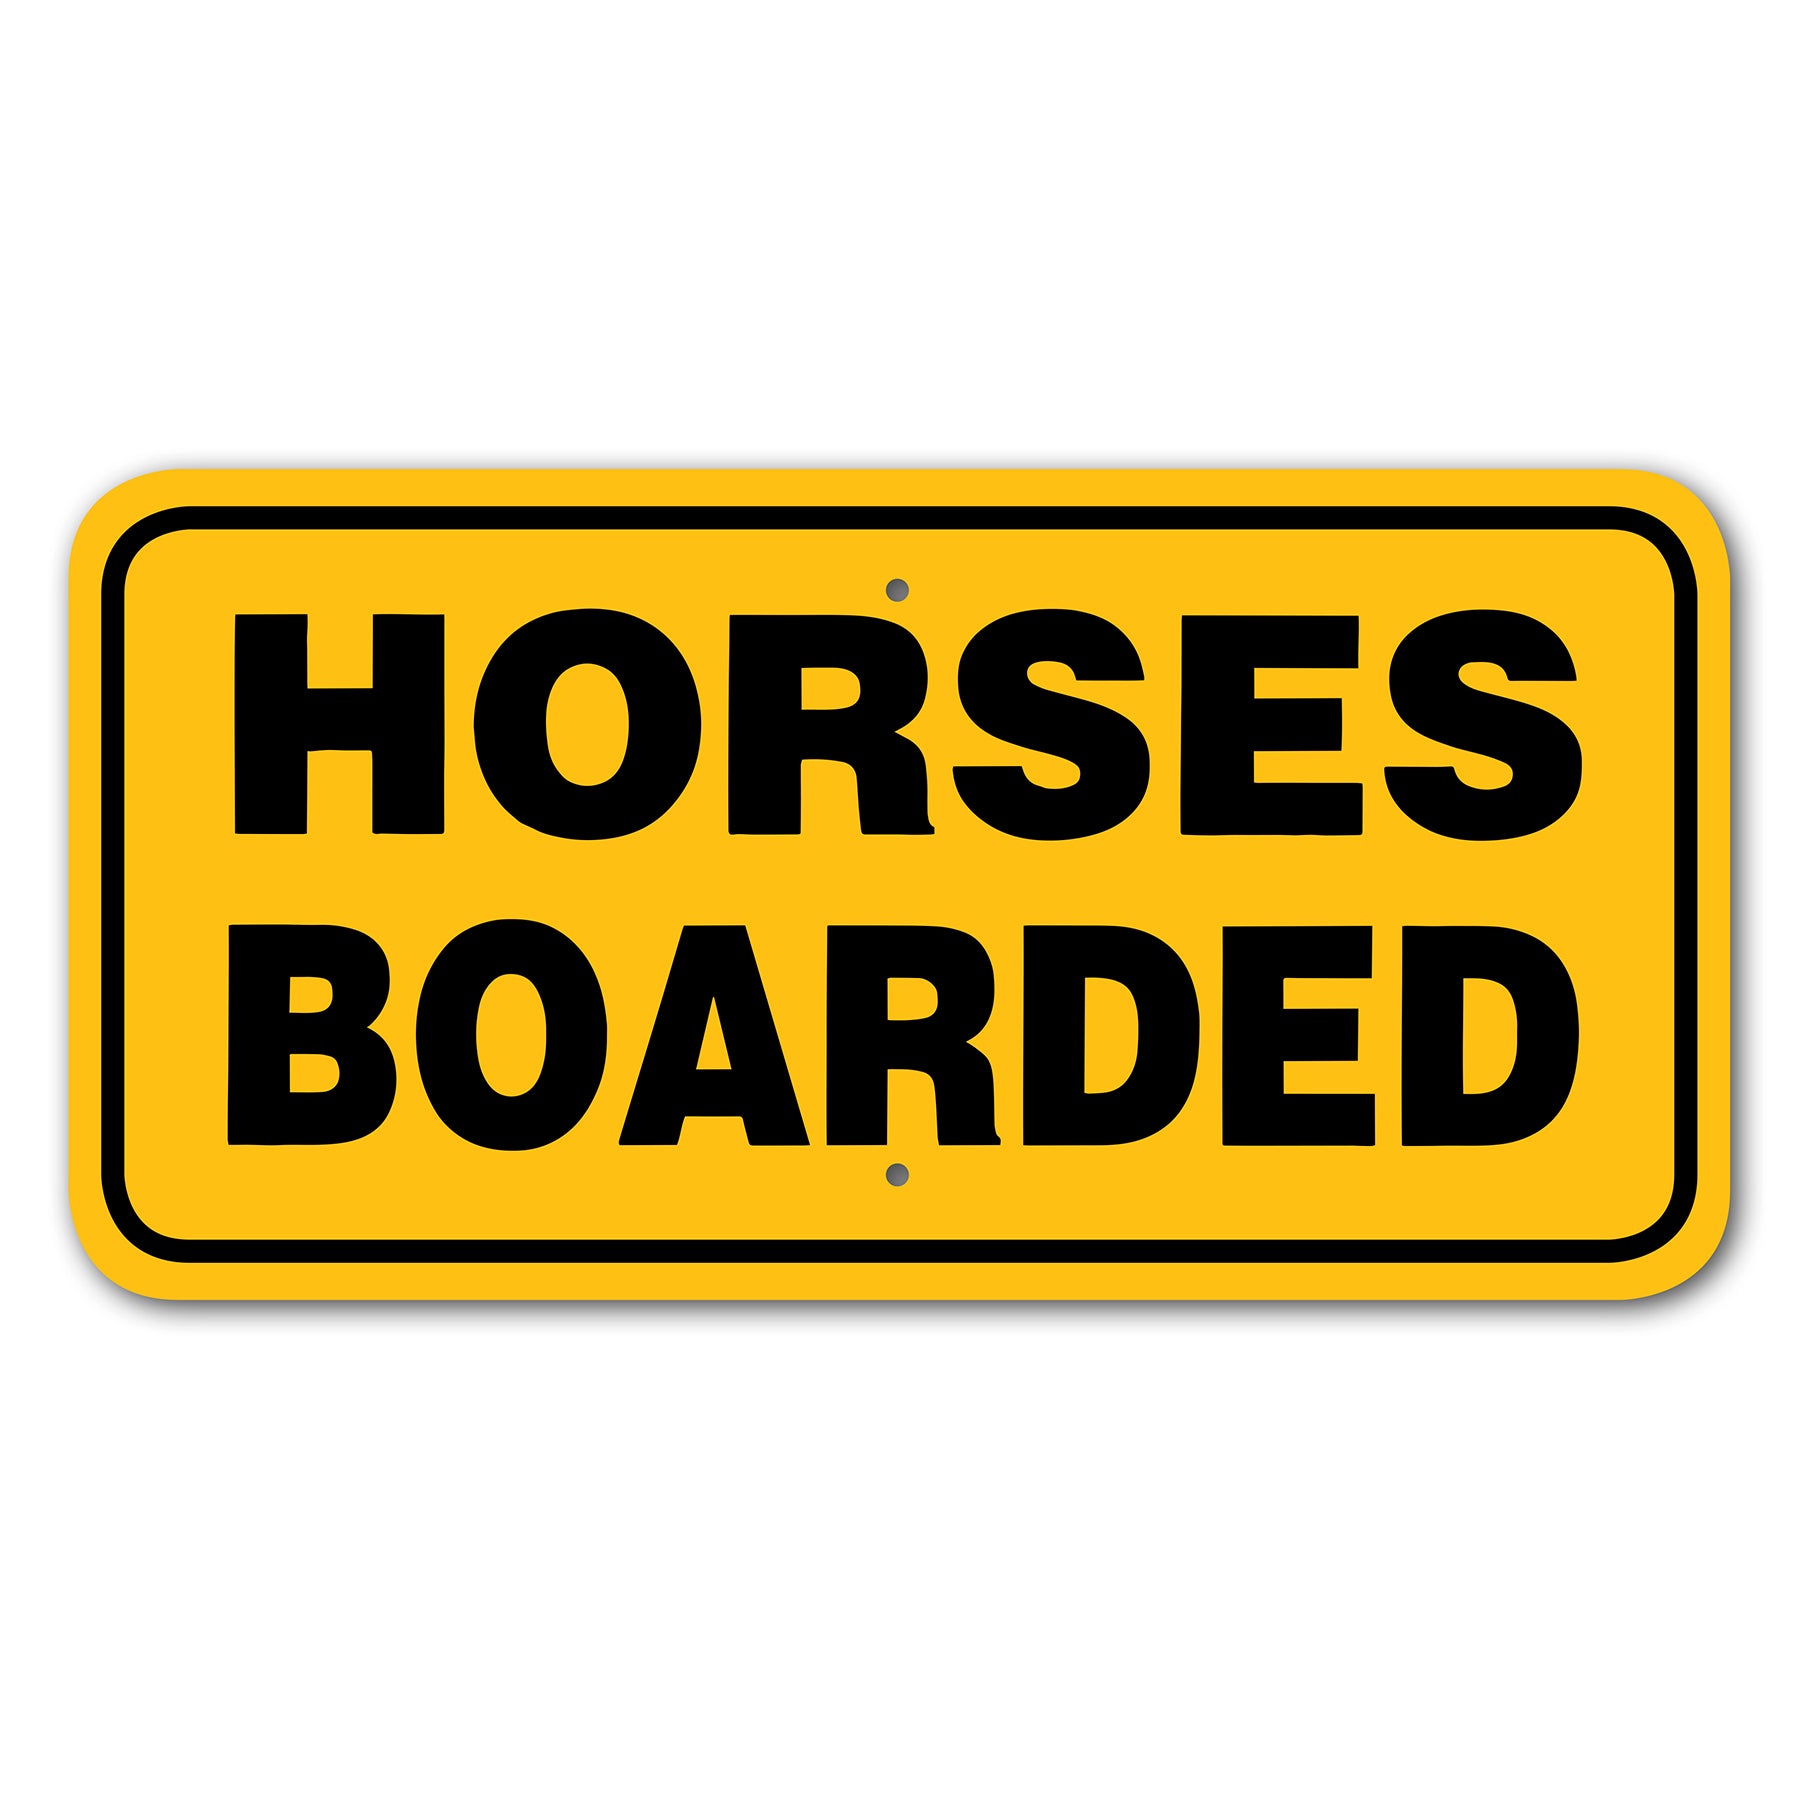 horses boarded 3444412 main